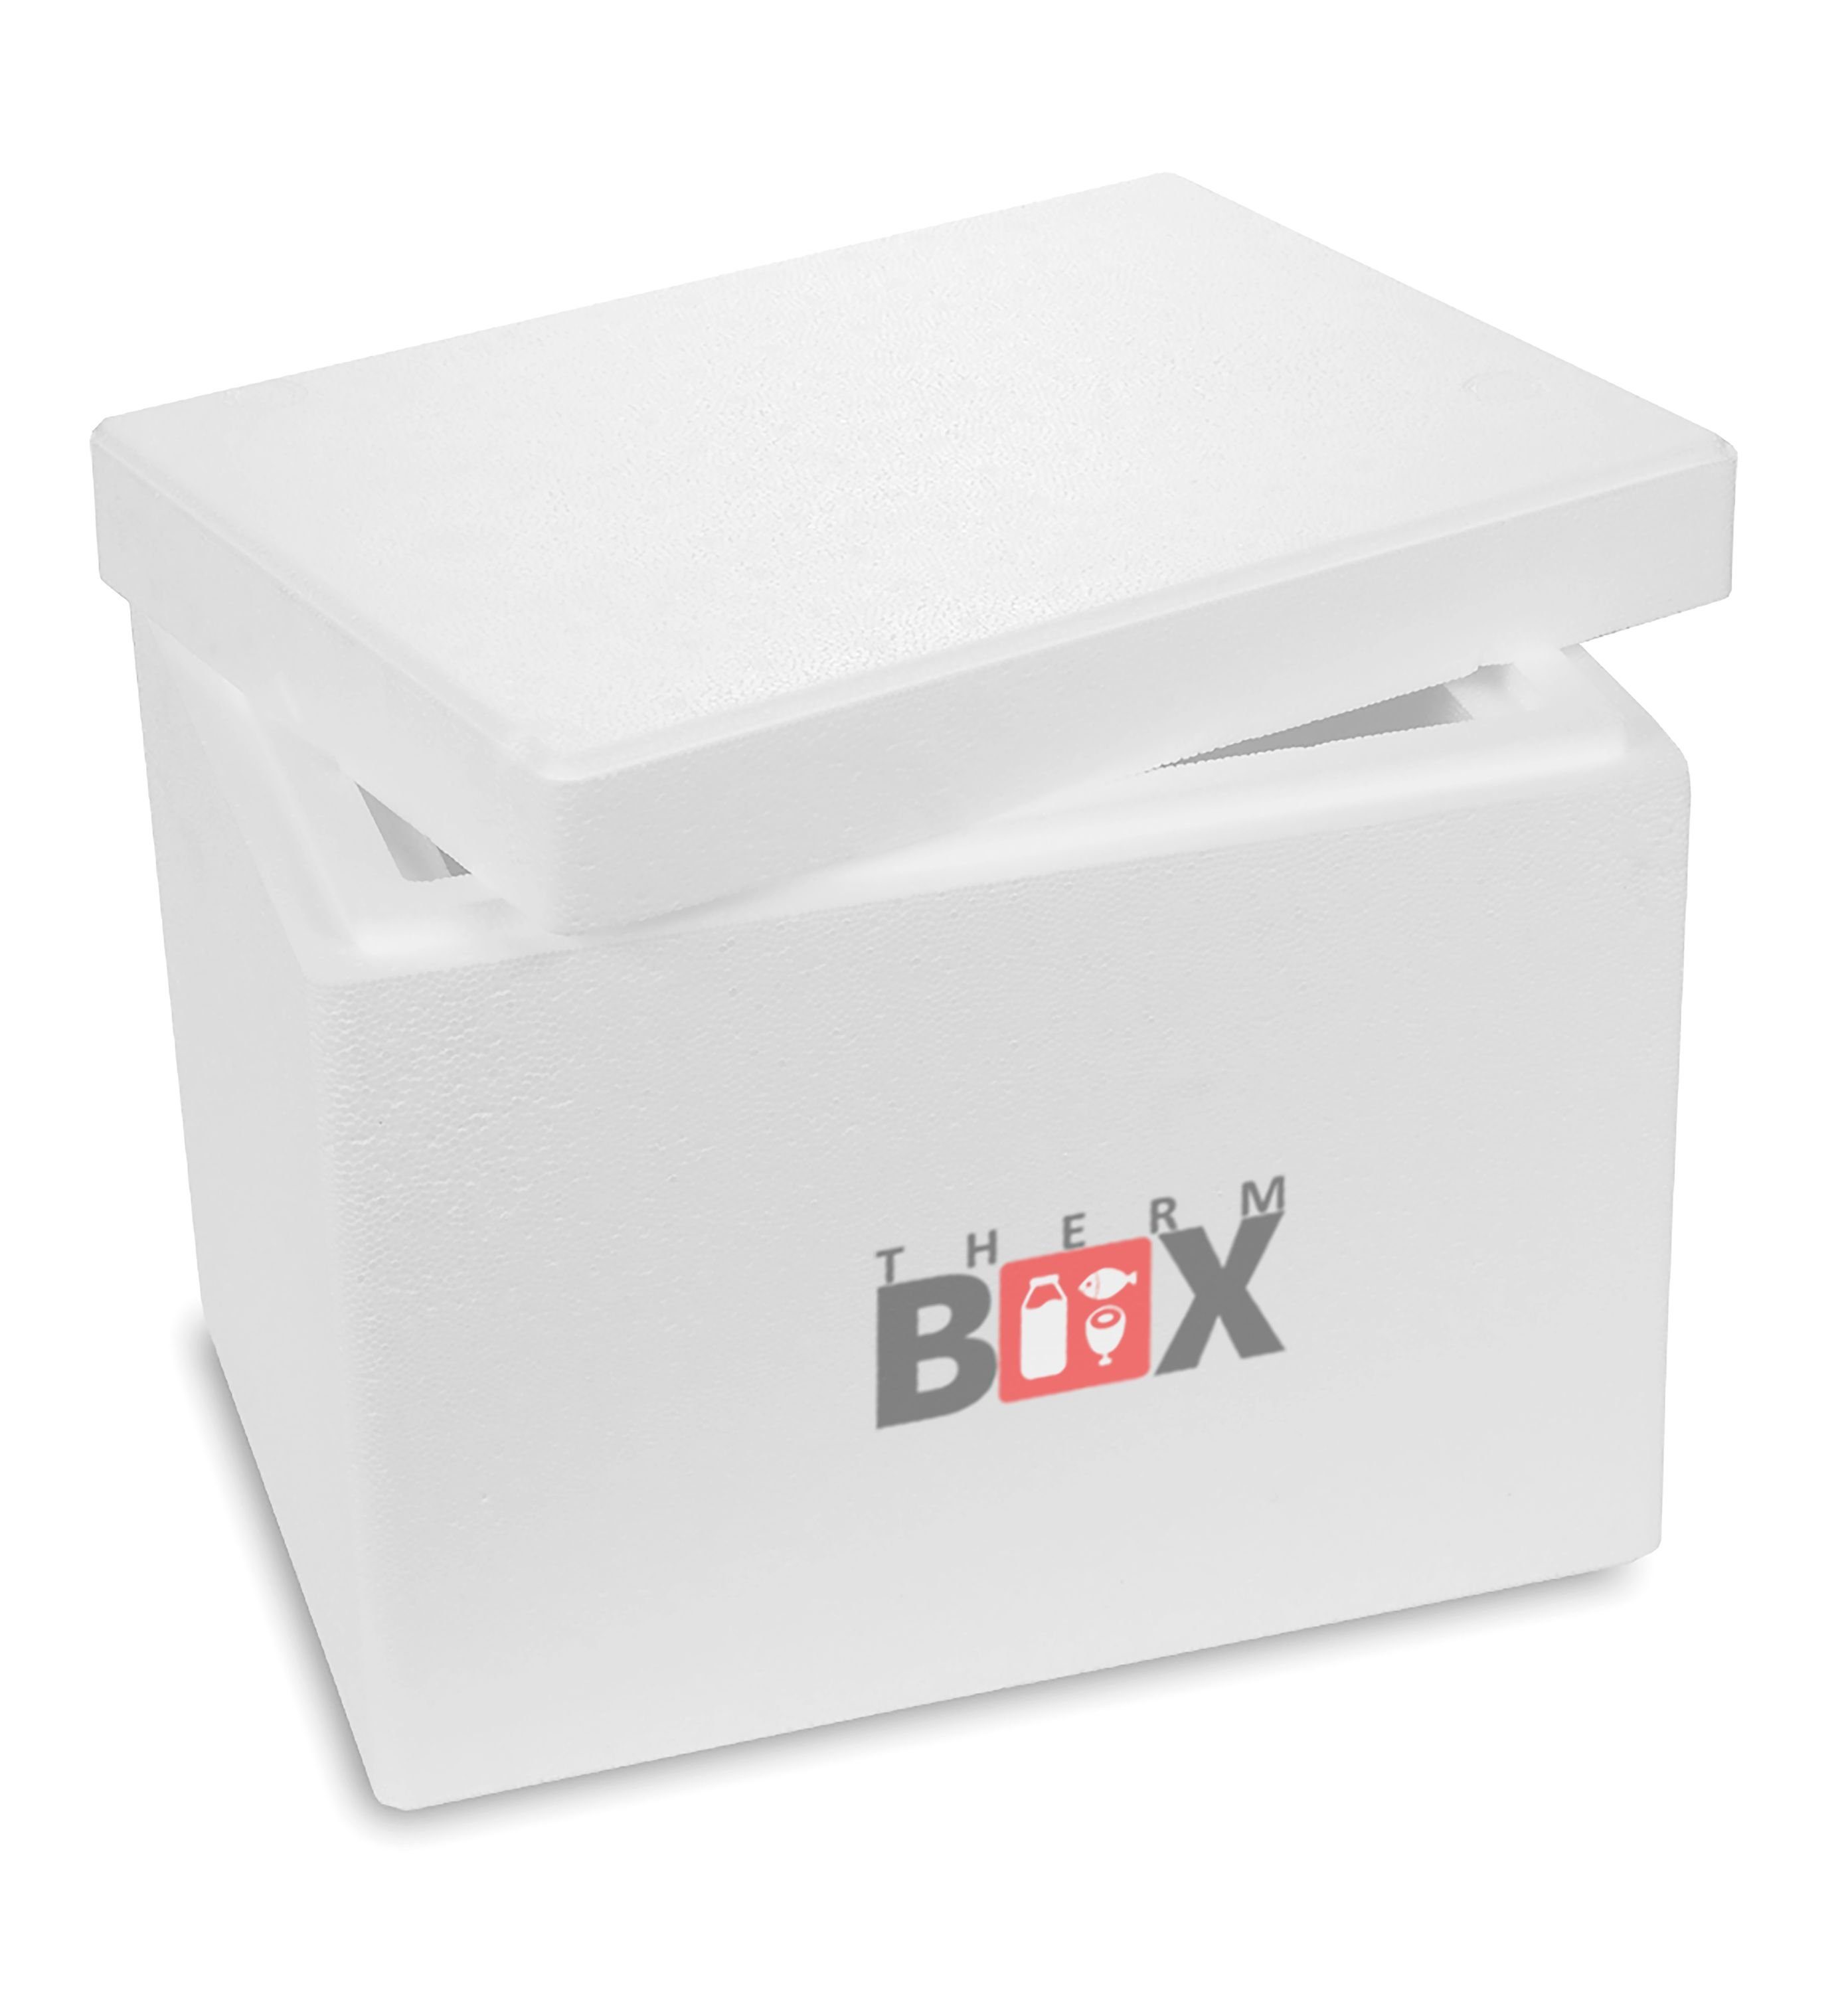 THERM-BOX Thermobehälter Styroporbox 13W Innen: Kühlbox (1, Isolierbox im mit 0-tlg., Karton), 5cm Styropor-Verdichtet, Box Thermobox Wand: Wiederverwendbar 30x20x22cm 13,2L, Warmhaltebox Deckel